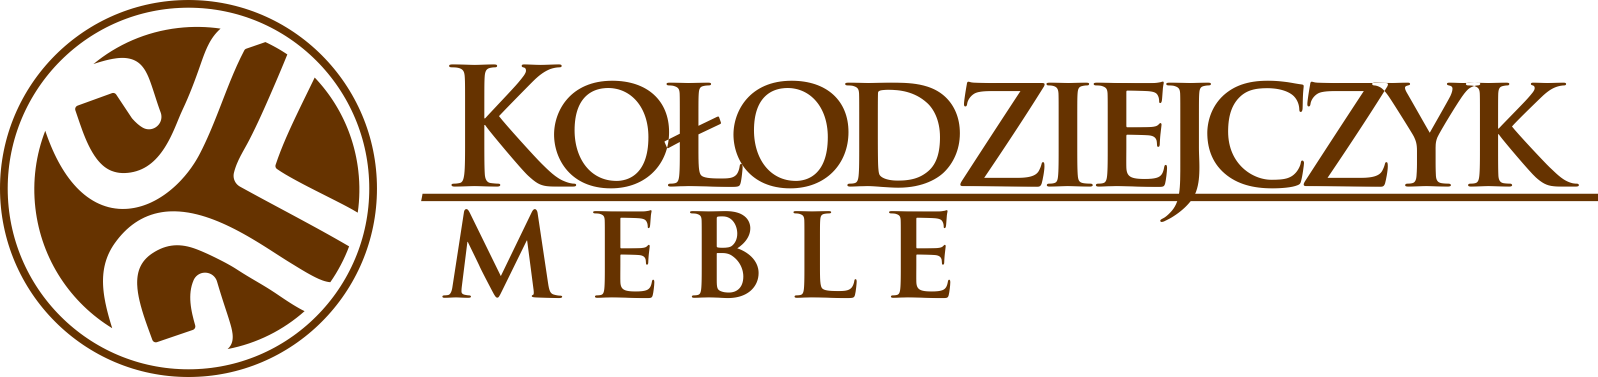 Meble Kołodziejczyk logo poziome